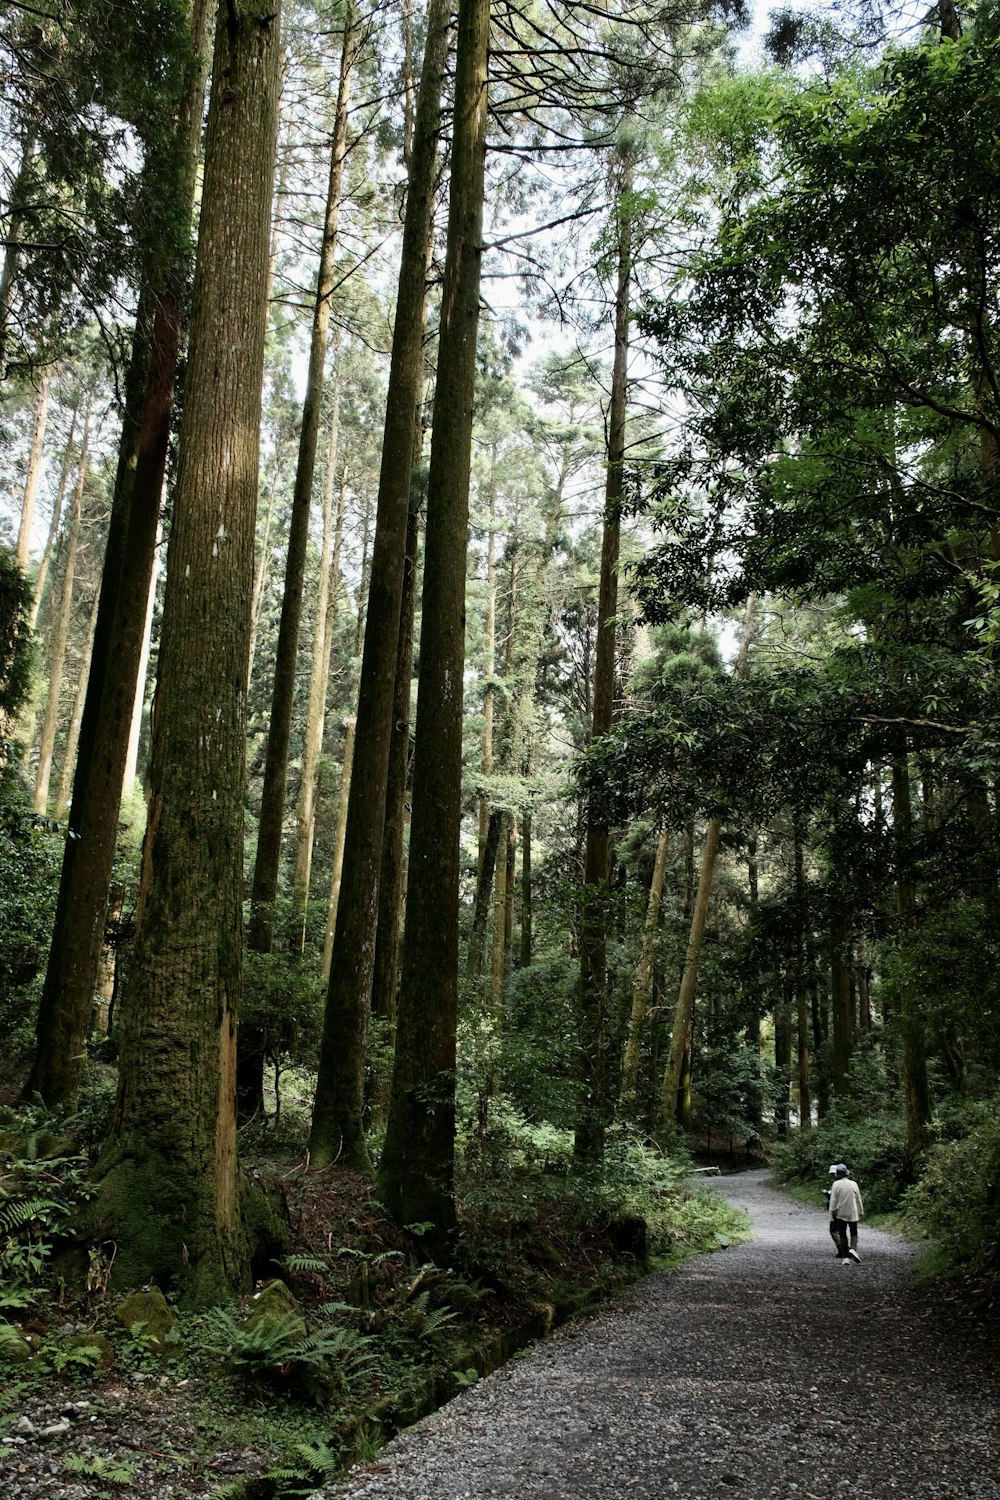 a person walking down a path through a forest